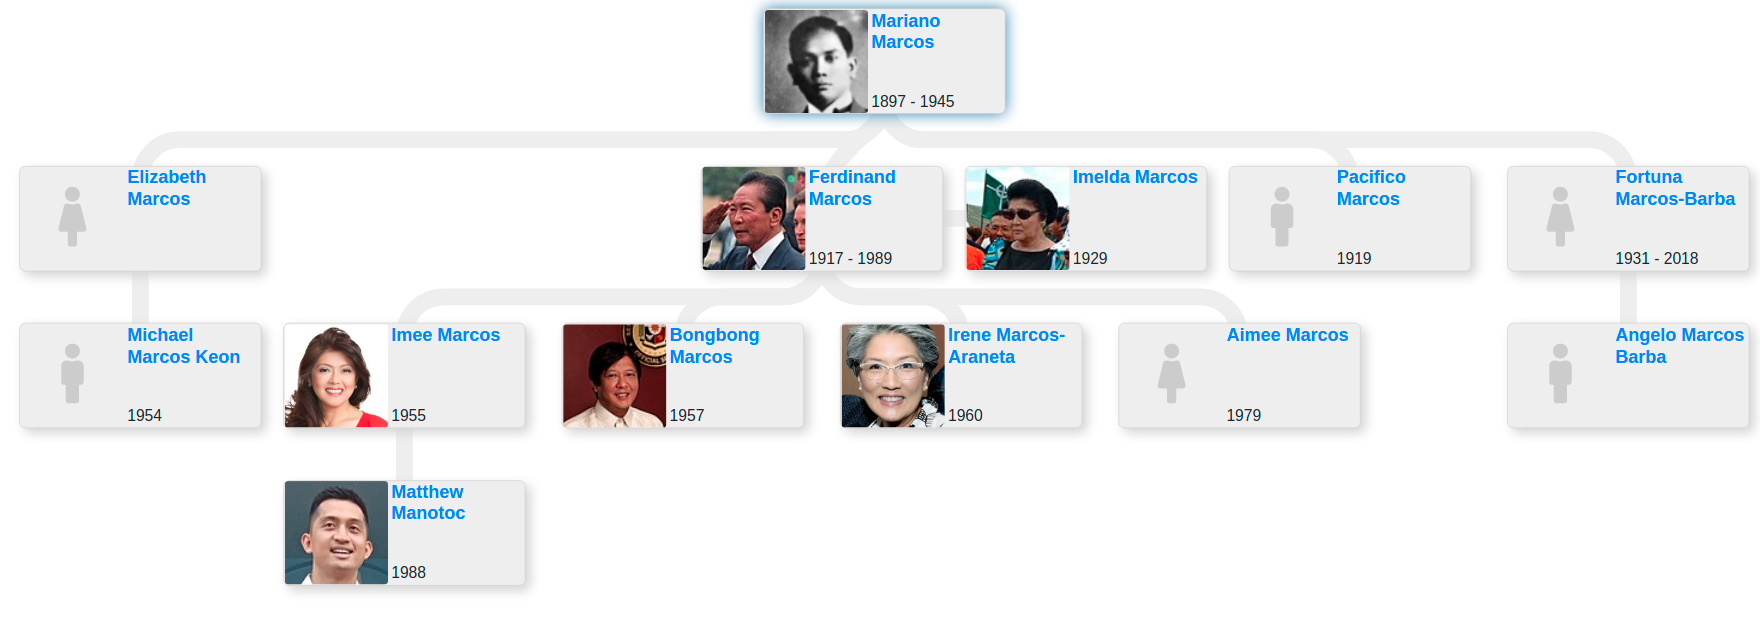 Ferdinand Marcos Family Tree